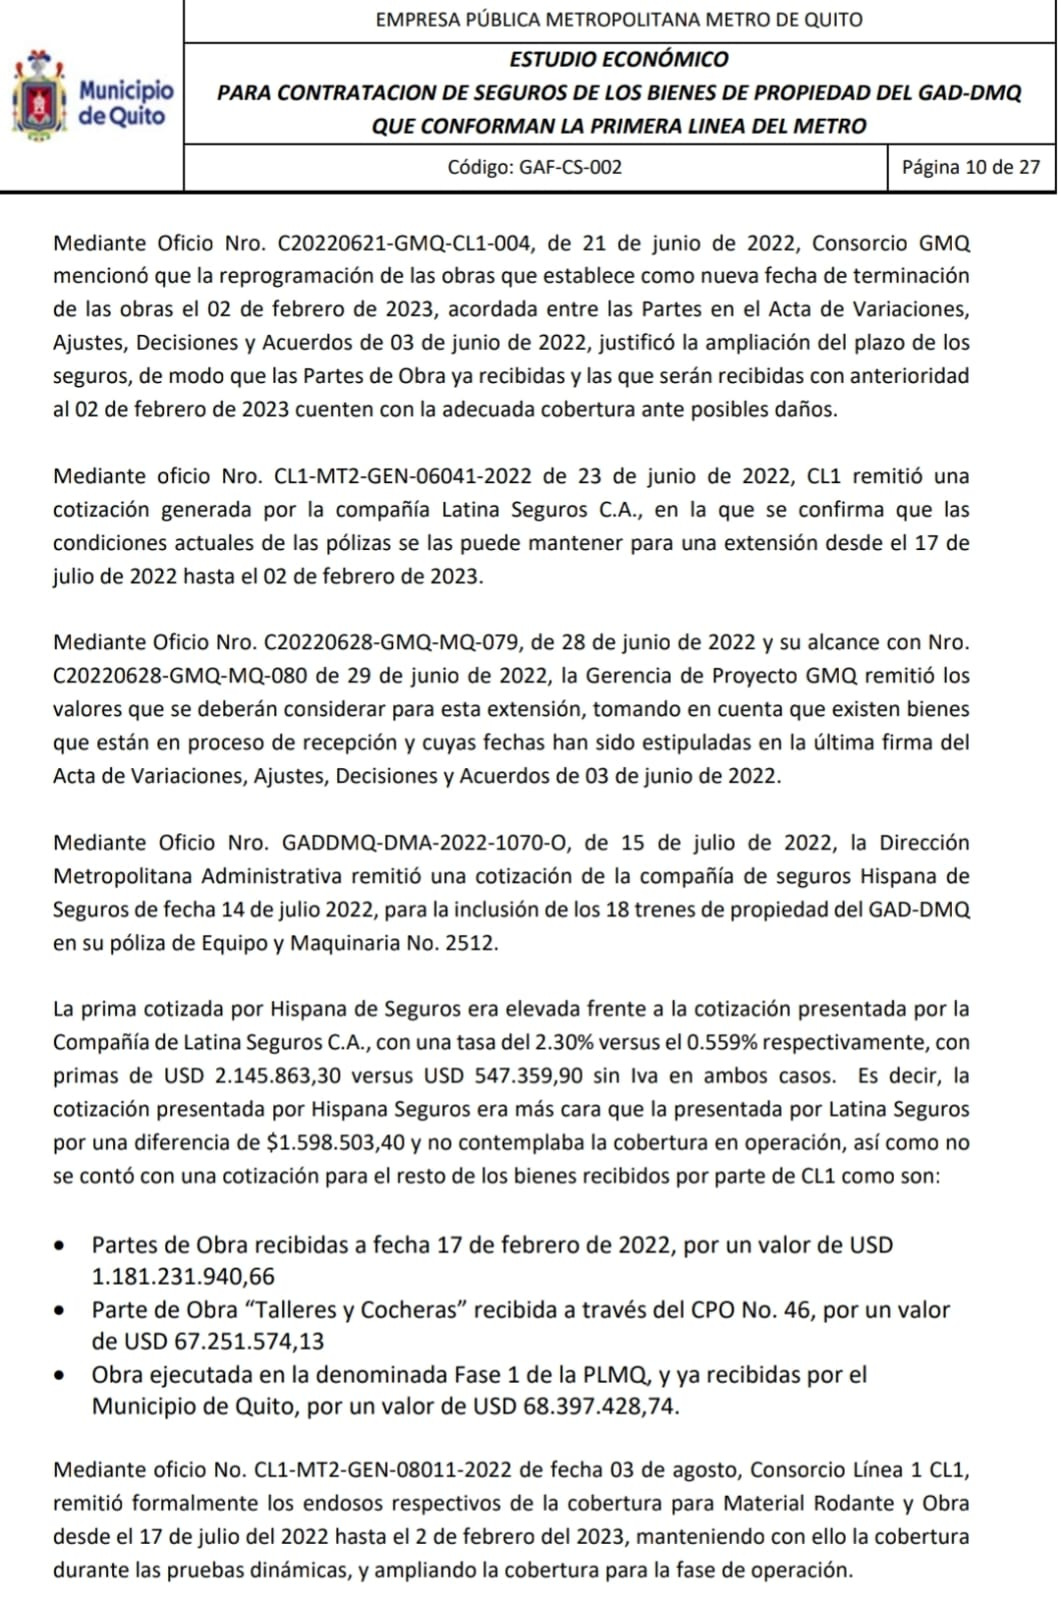 Parte del informe sobre los seguros del Metro de Quito